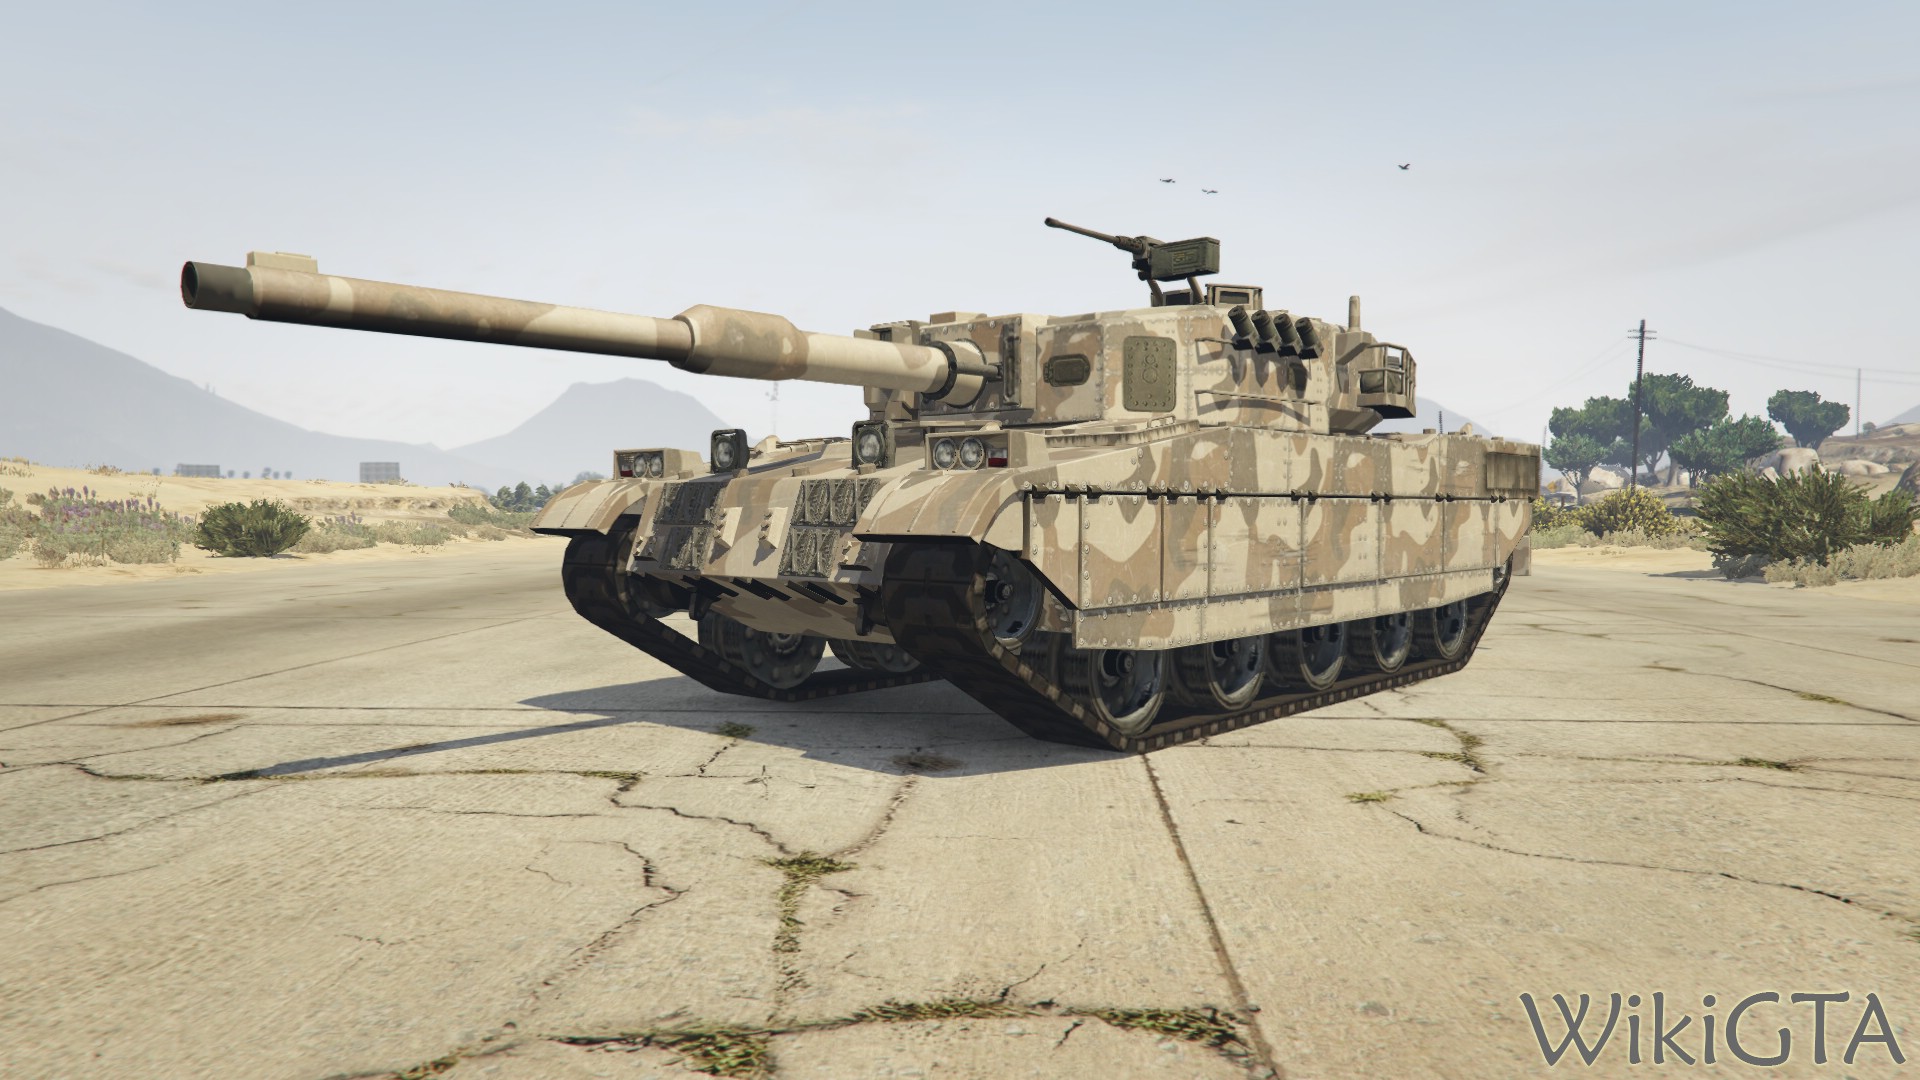 Rhino Tank in GTA V